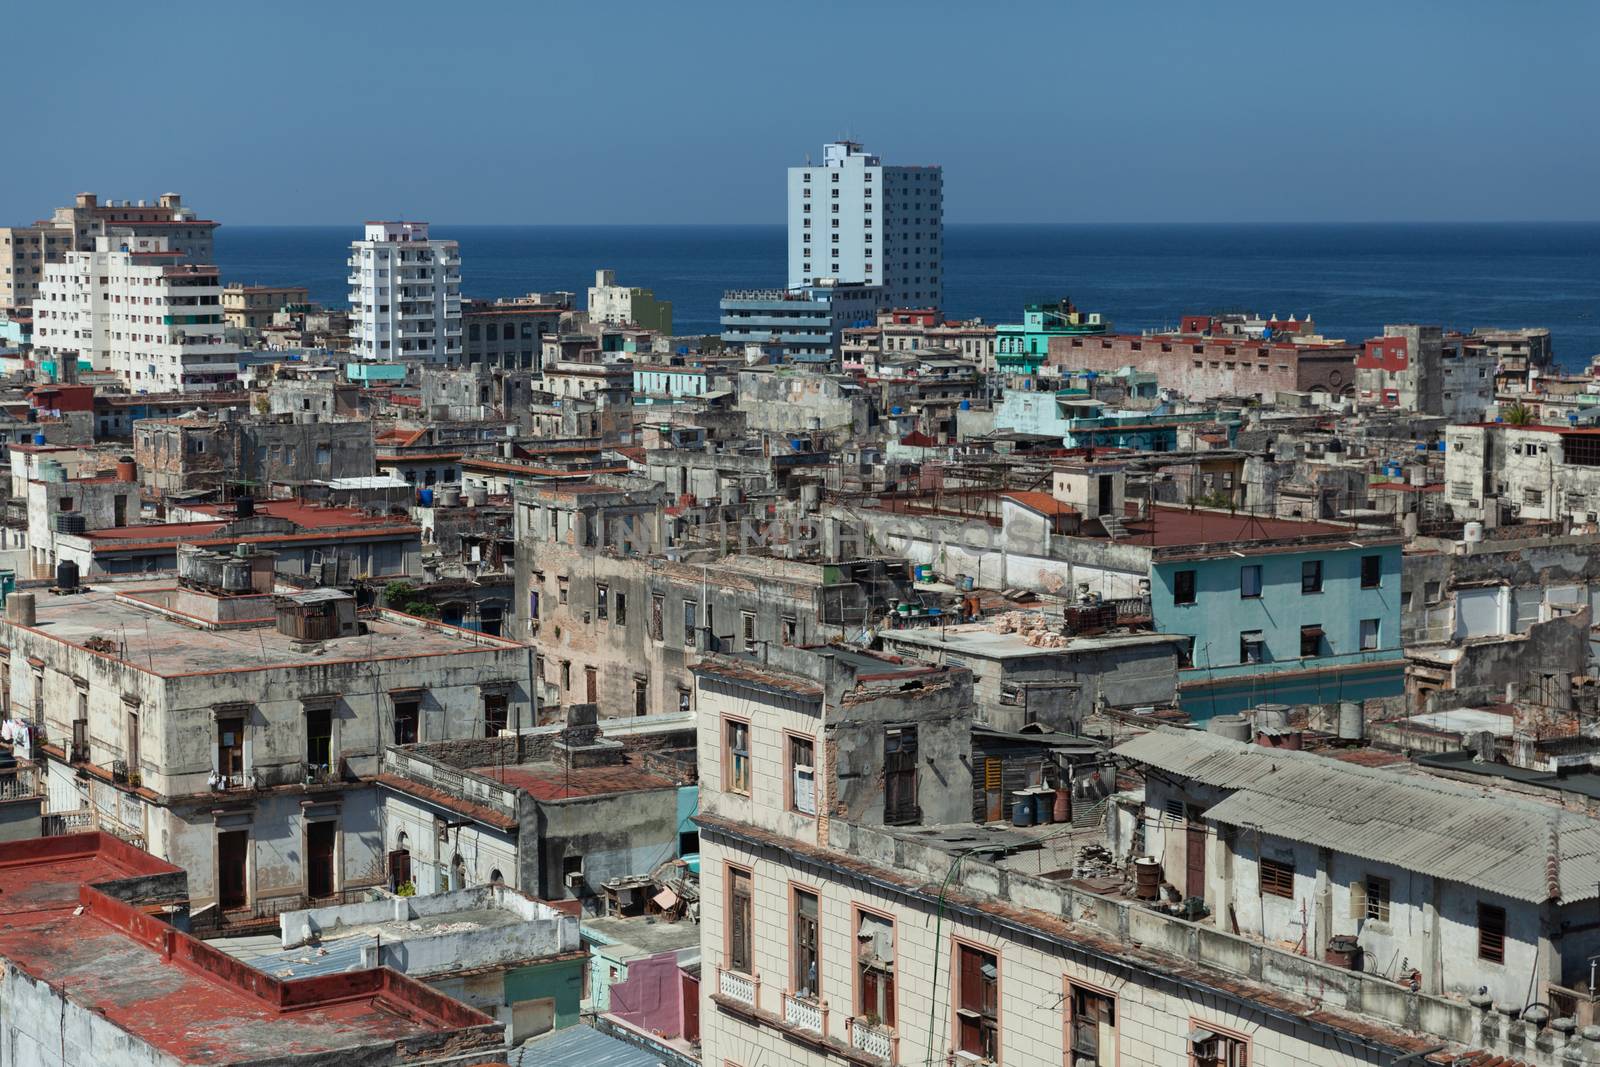 Roofs of Havana, Cuba by vlad-m